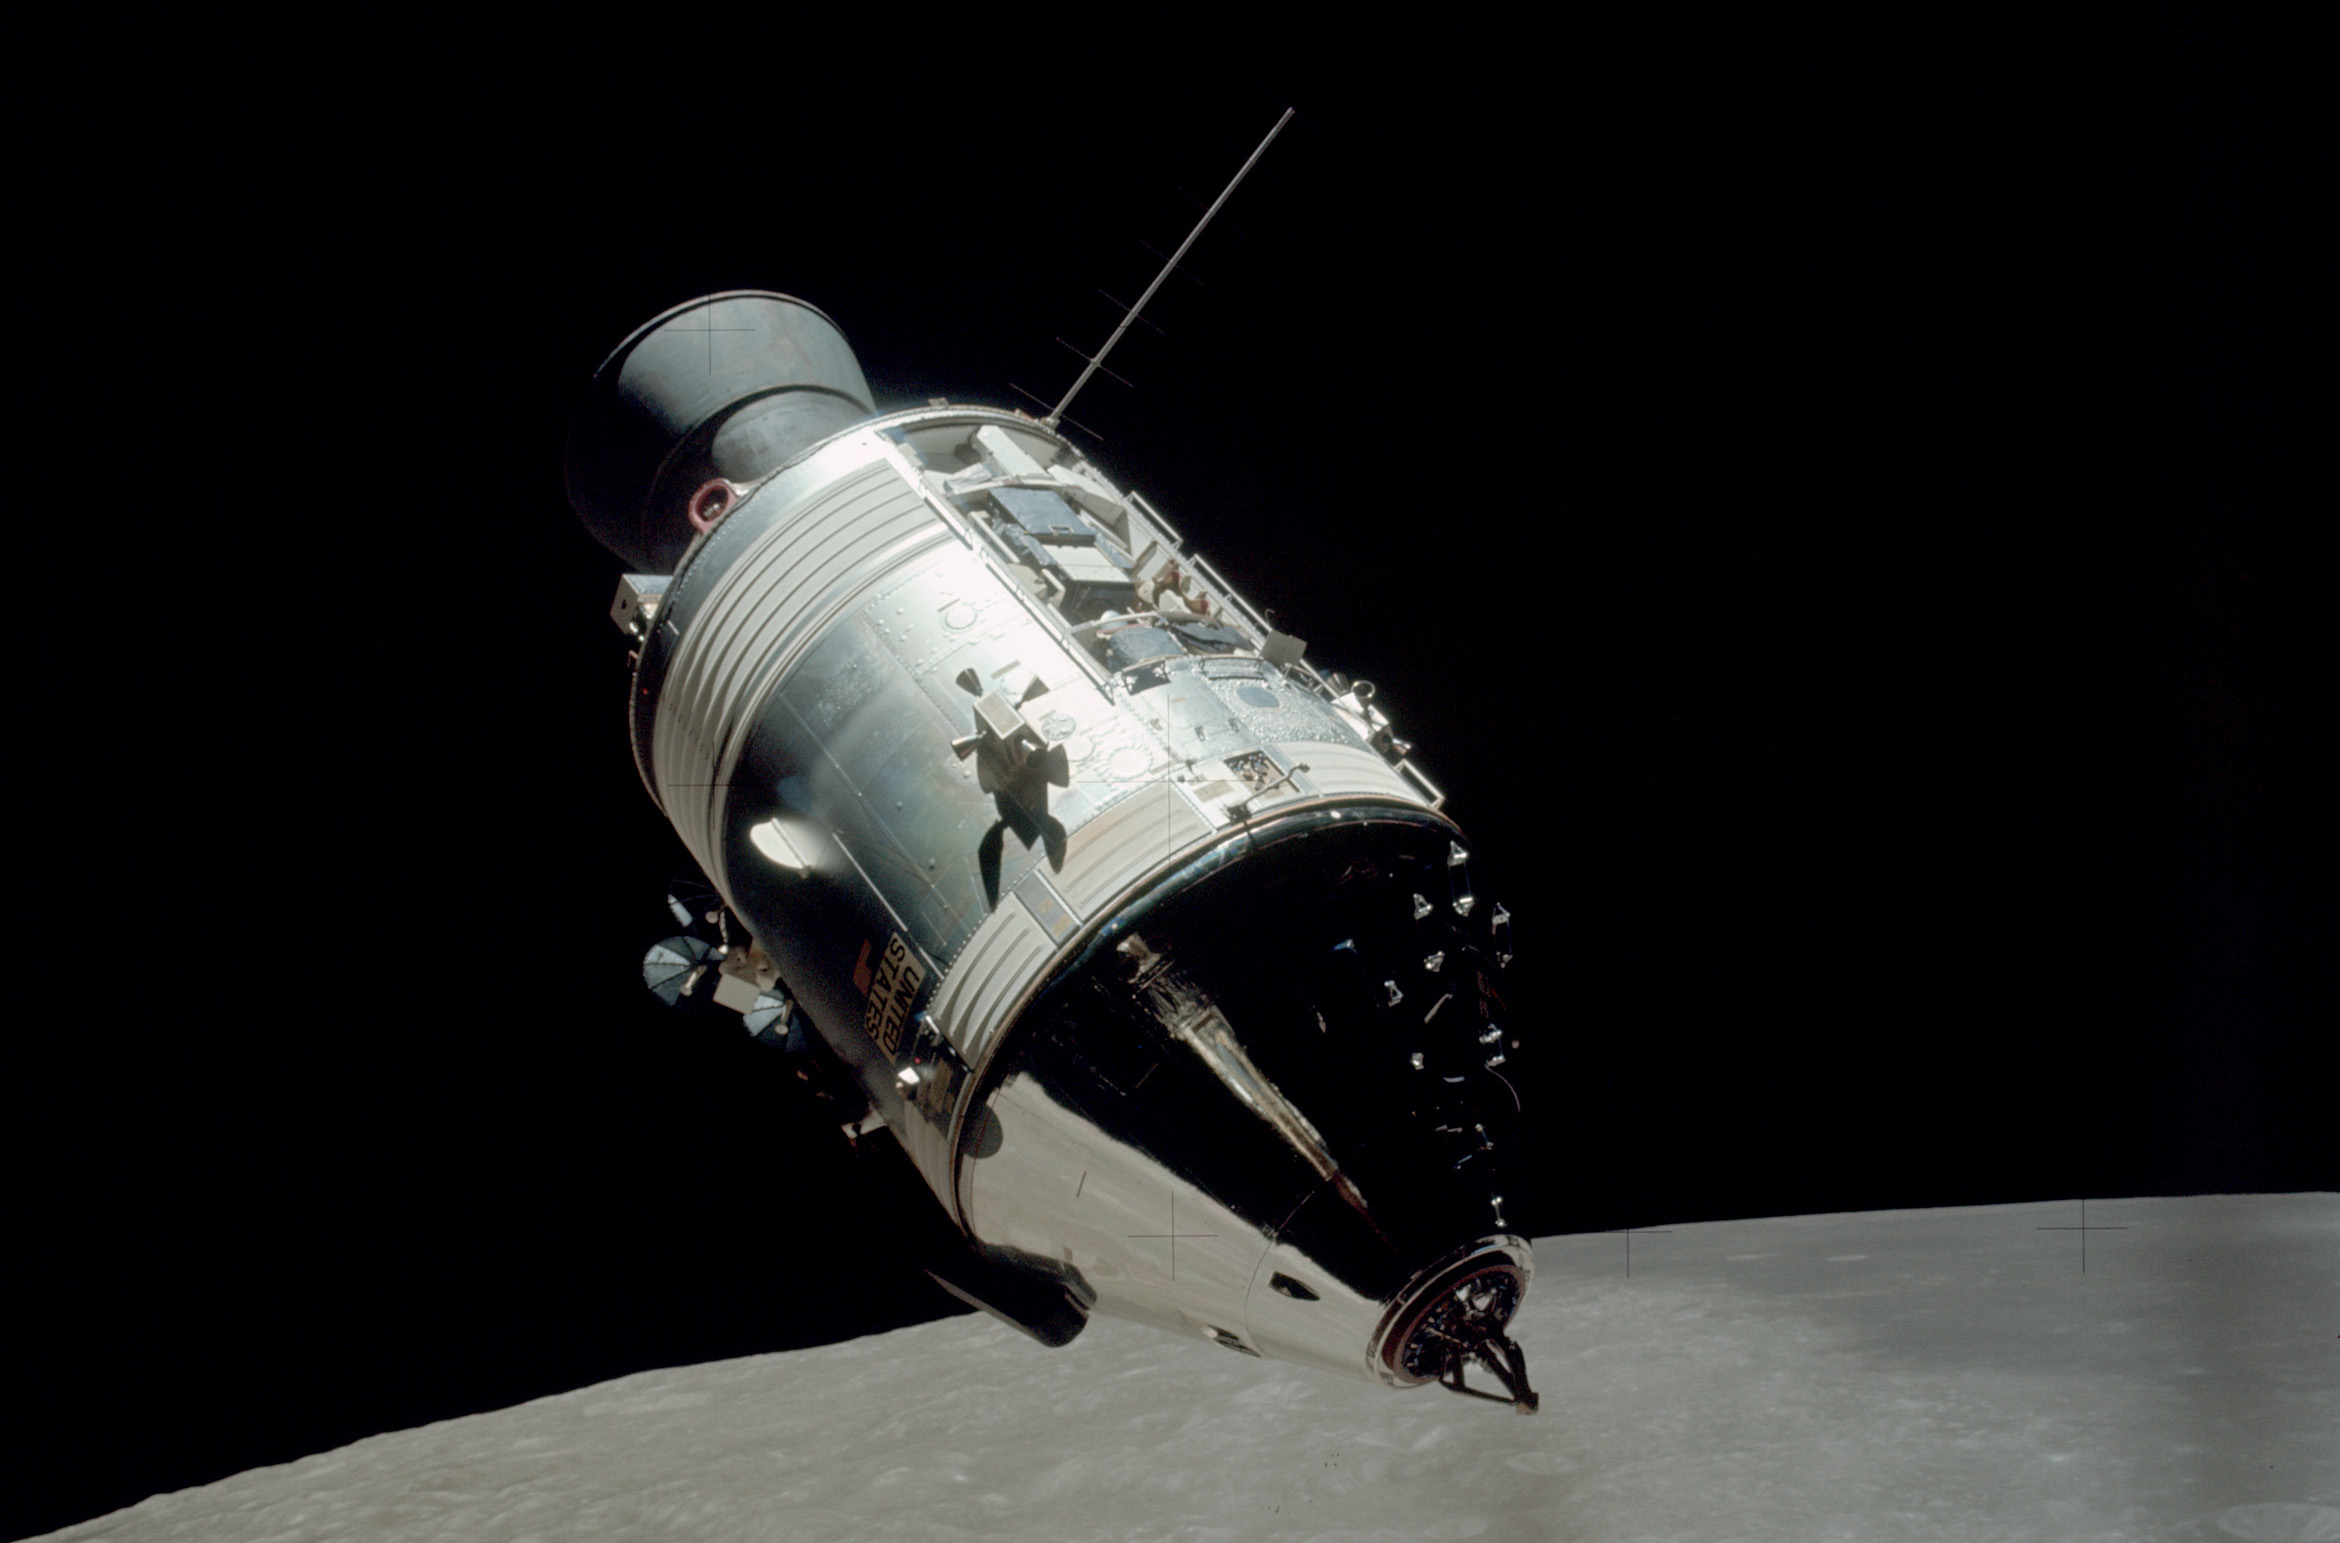 The Apollo 17 Command Module in lunar orbit. Credit: NASA